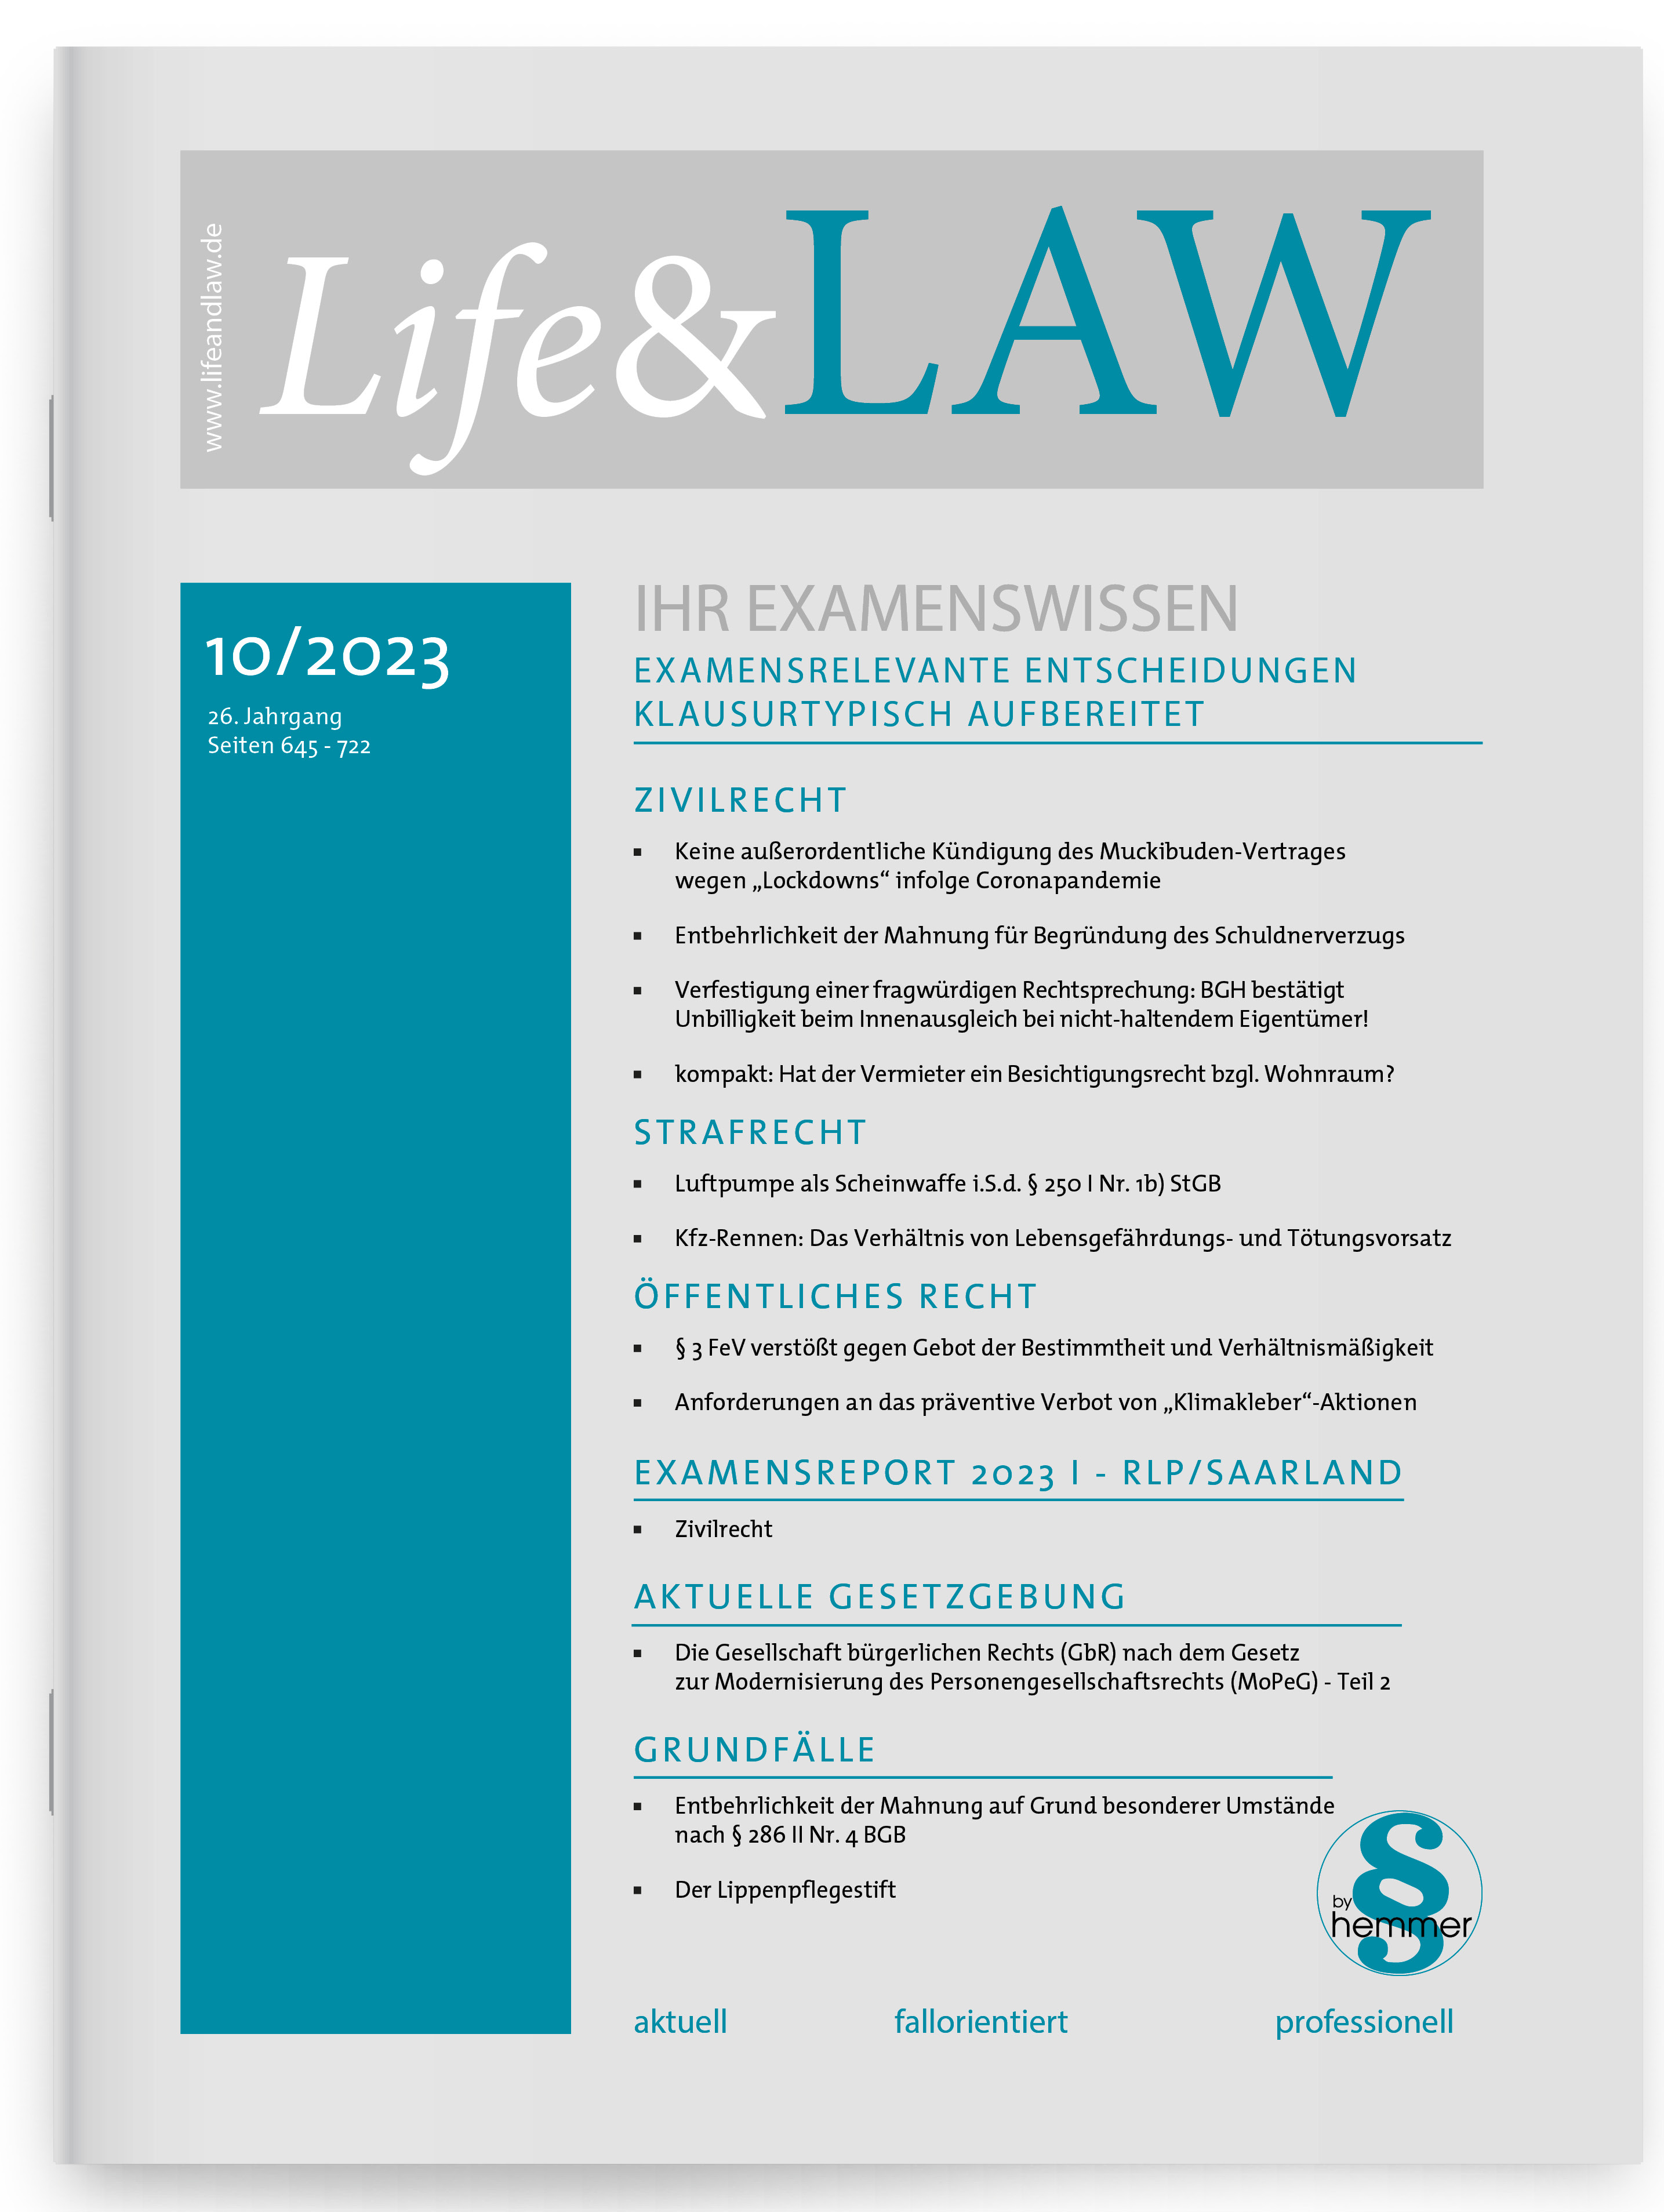 Life & Law - hemmer Ausbildungszeitschrift